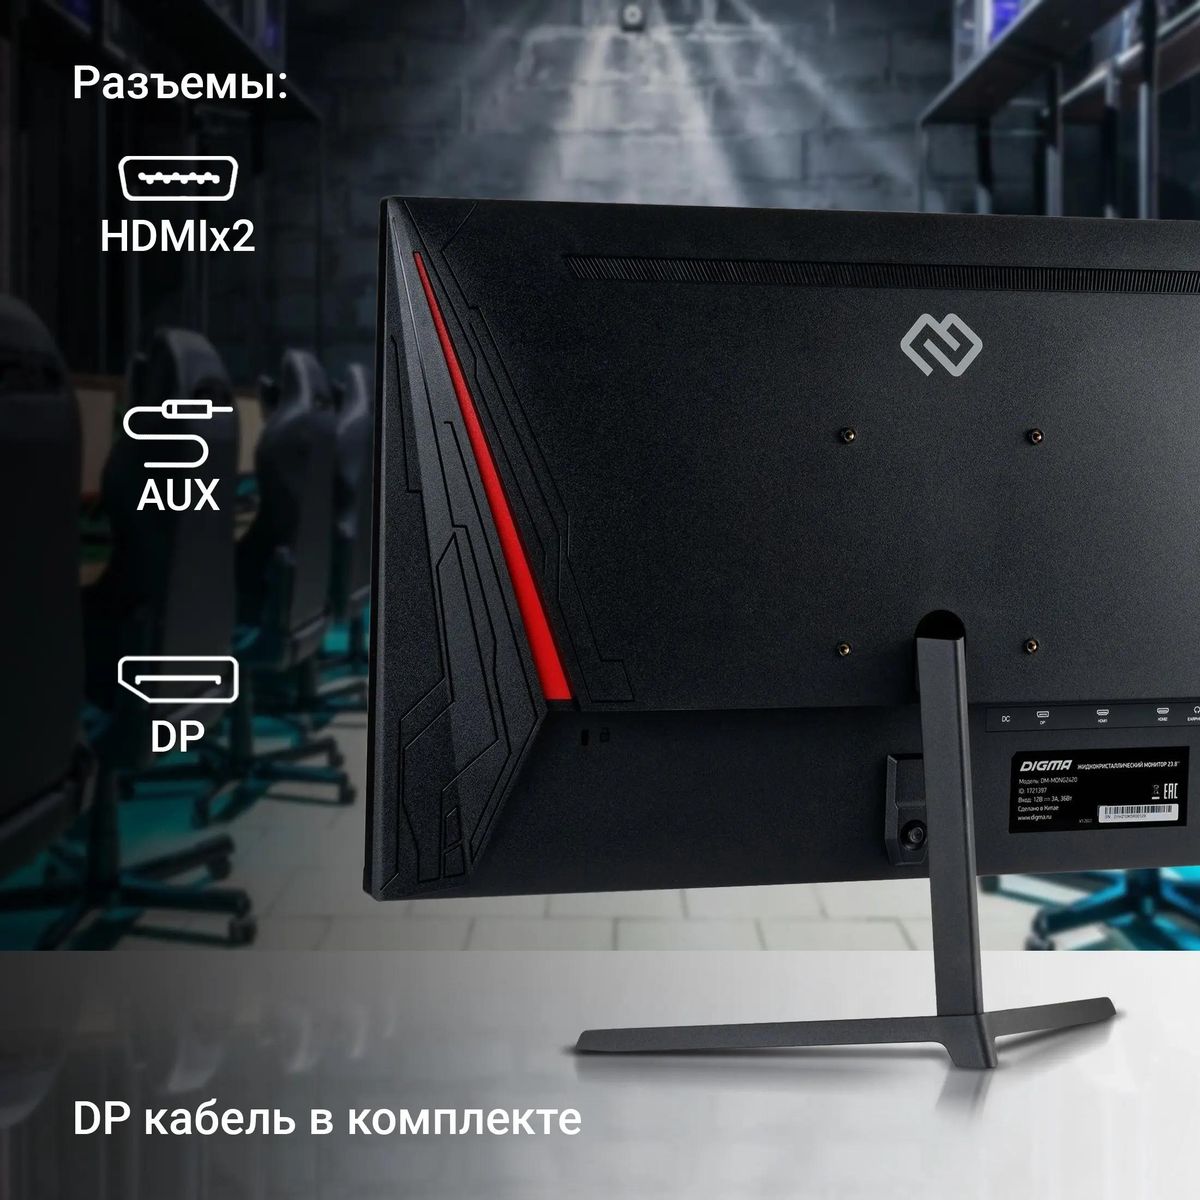 Монитор Digma Gaming Overdrive 24P510F 23.8", черный